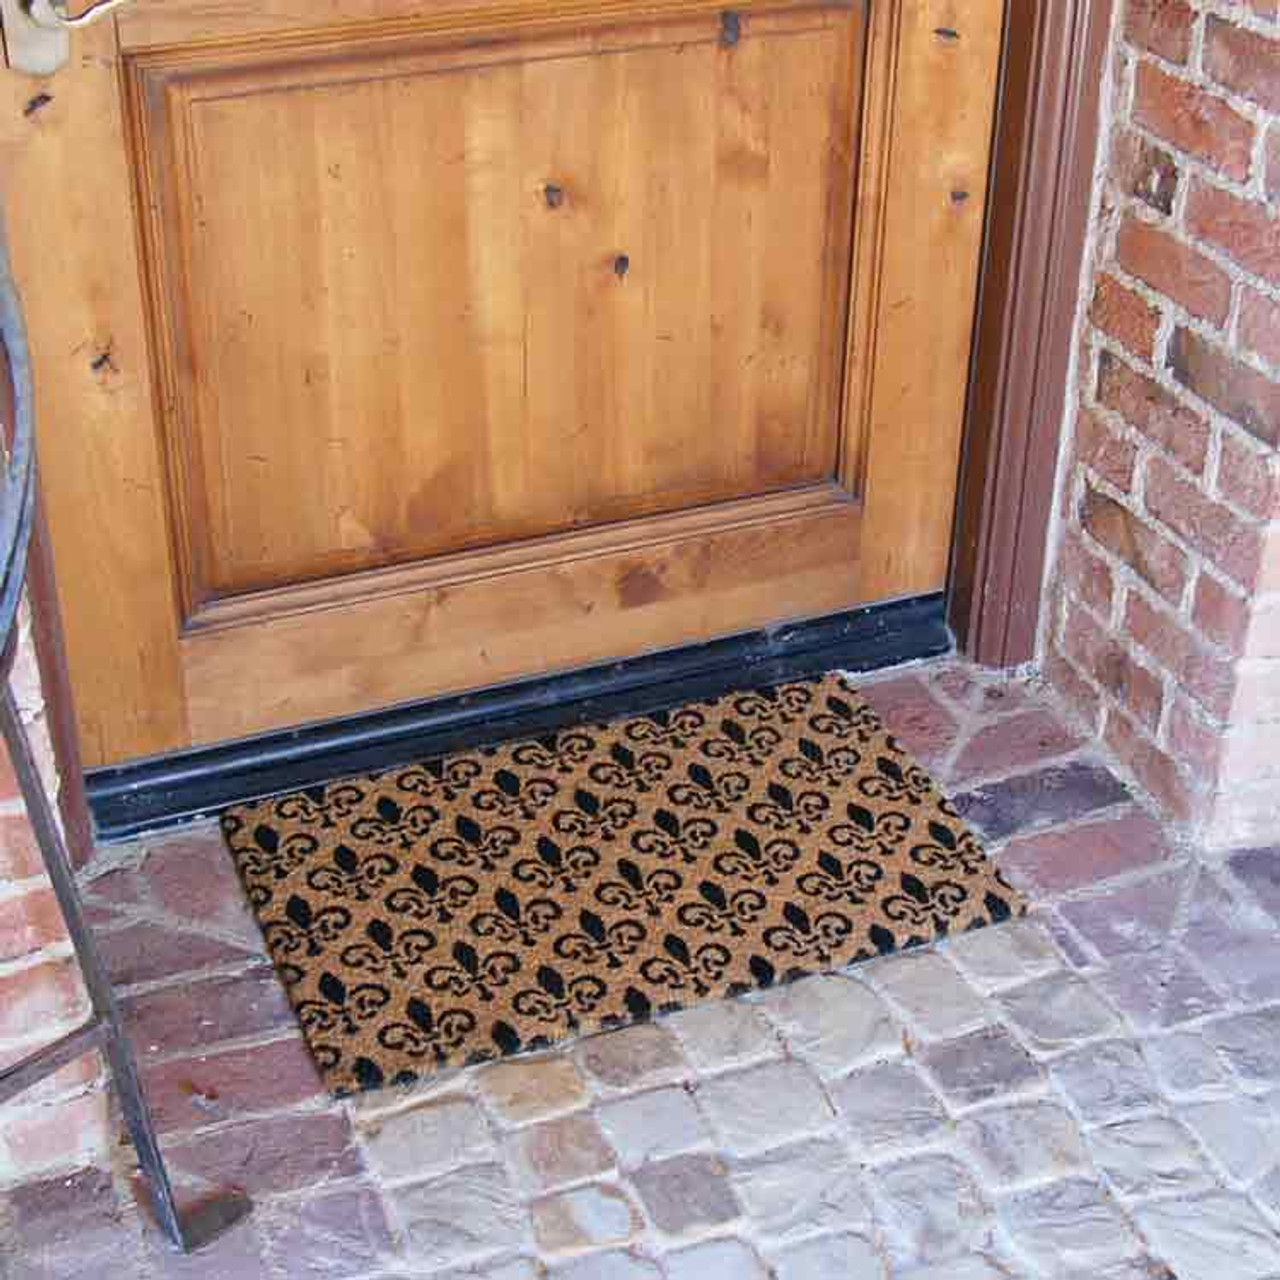 Rubber-Cal French Estate Door Mat Kit - 24 x 57 - 2 Doormats